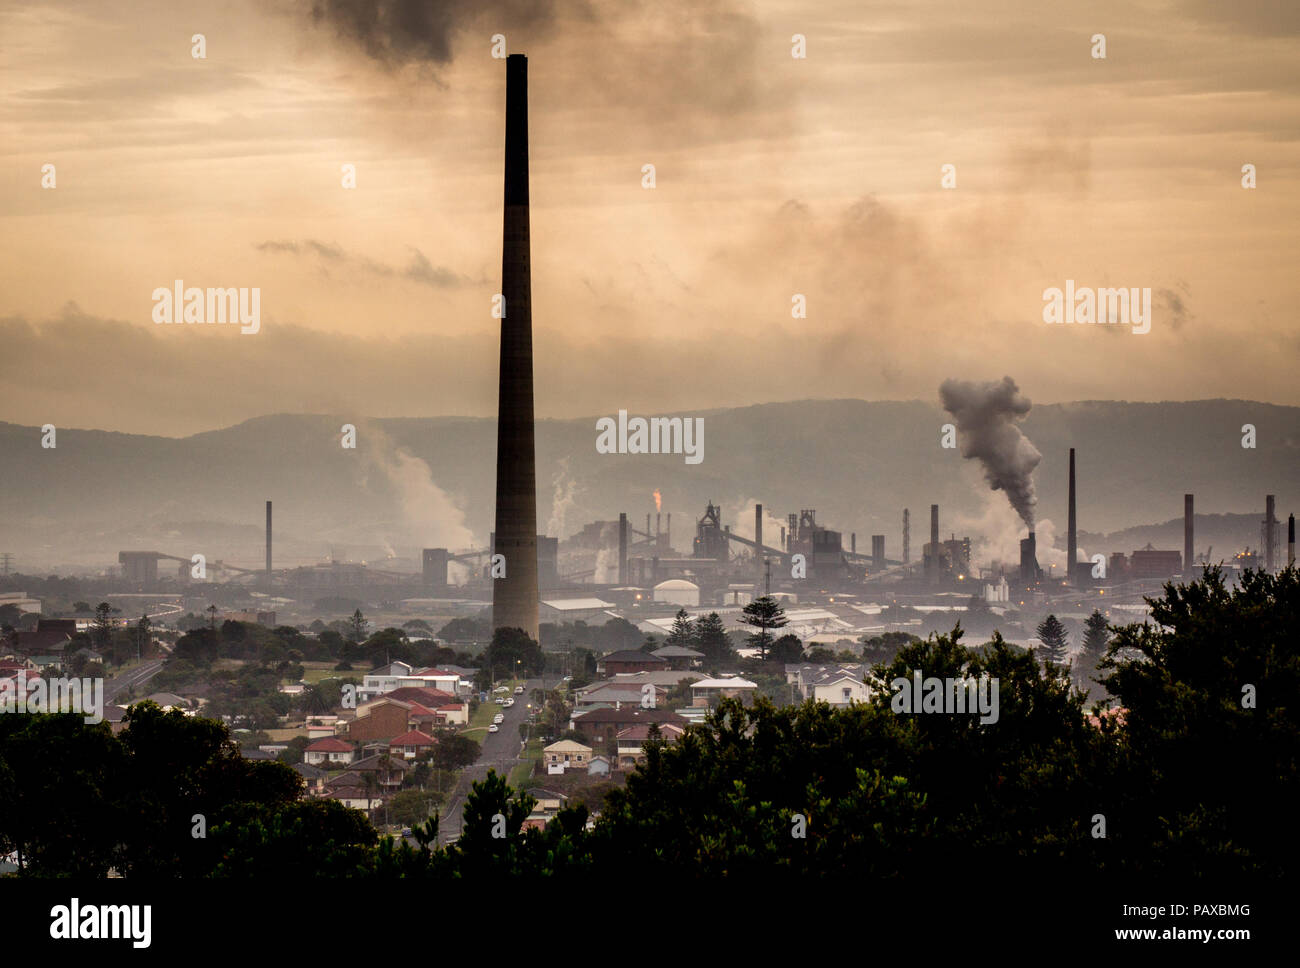 Klimawandel Konzept der industriellen Landschaft mit Schlote, Emissionen von Dampf und Rauch aus der Industriellen Werke, Port Kembla, NSW Australien Stockfoto